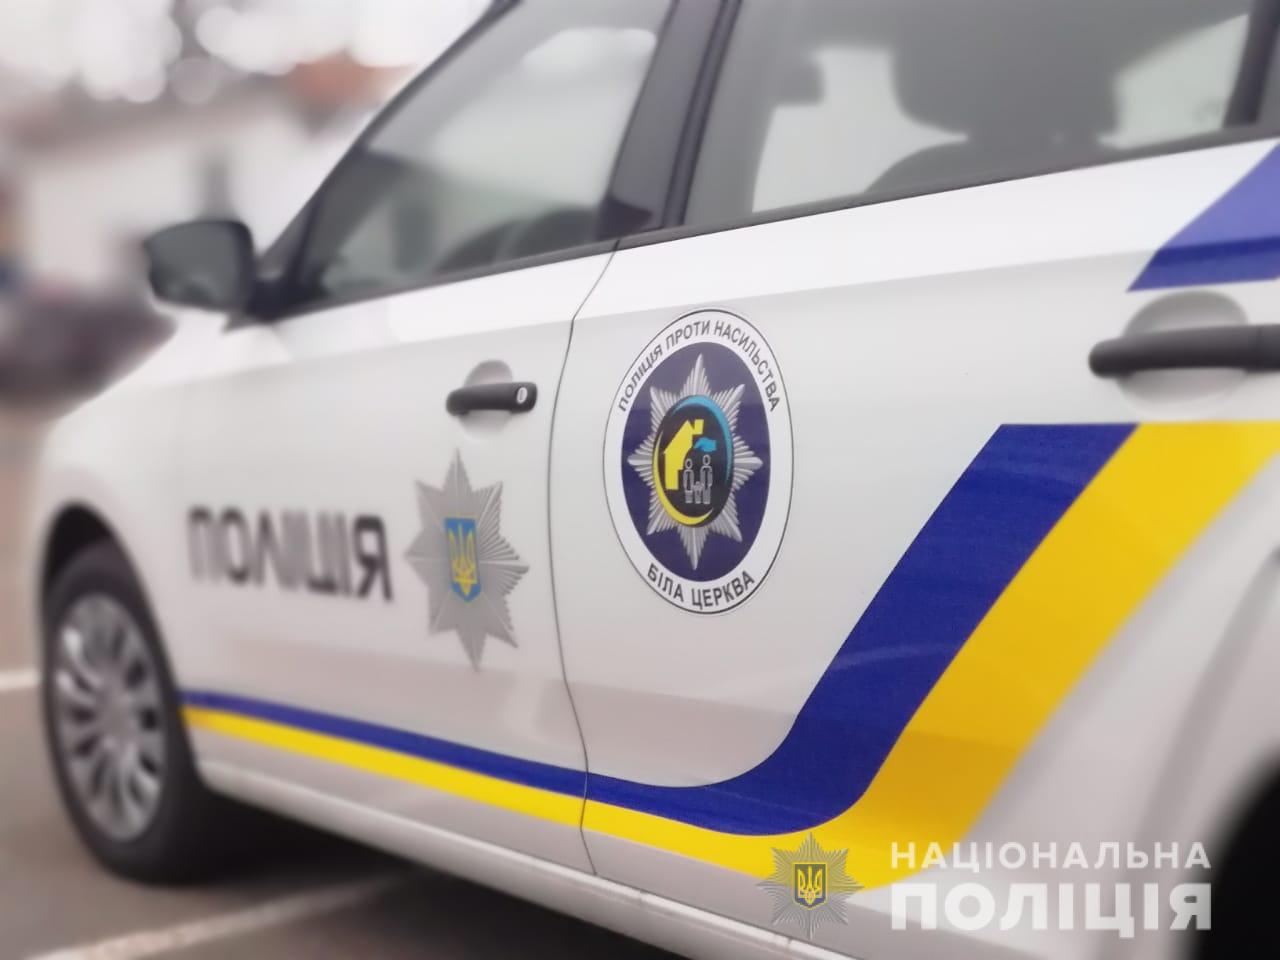 Пандемия на дорогах: на улицы Харькова выводят больше патрульных